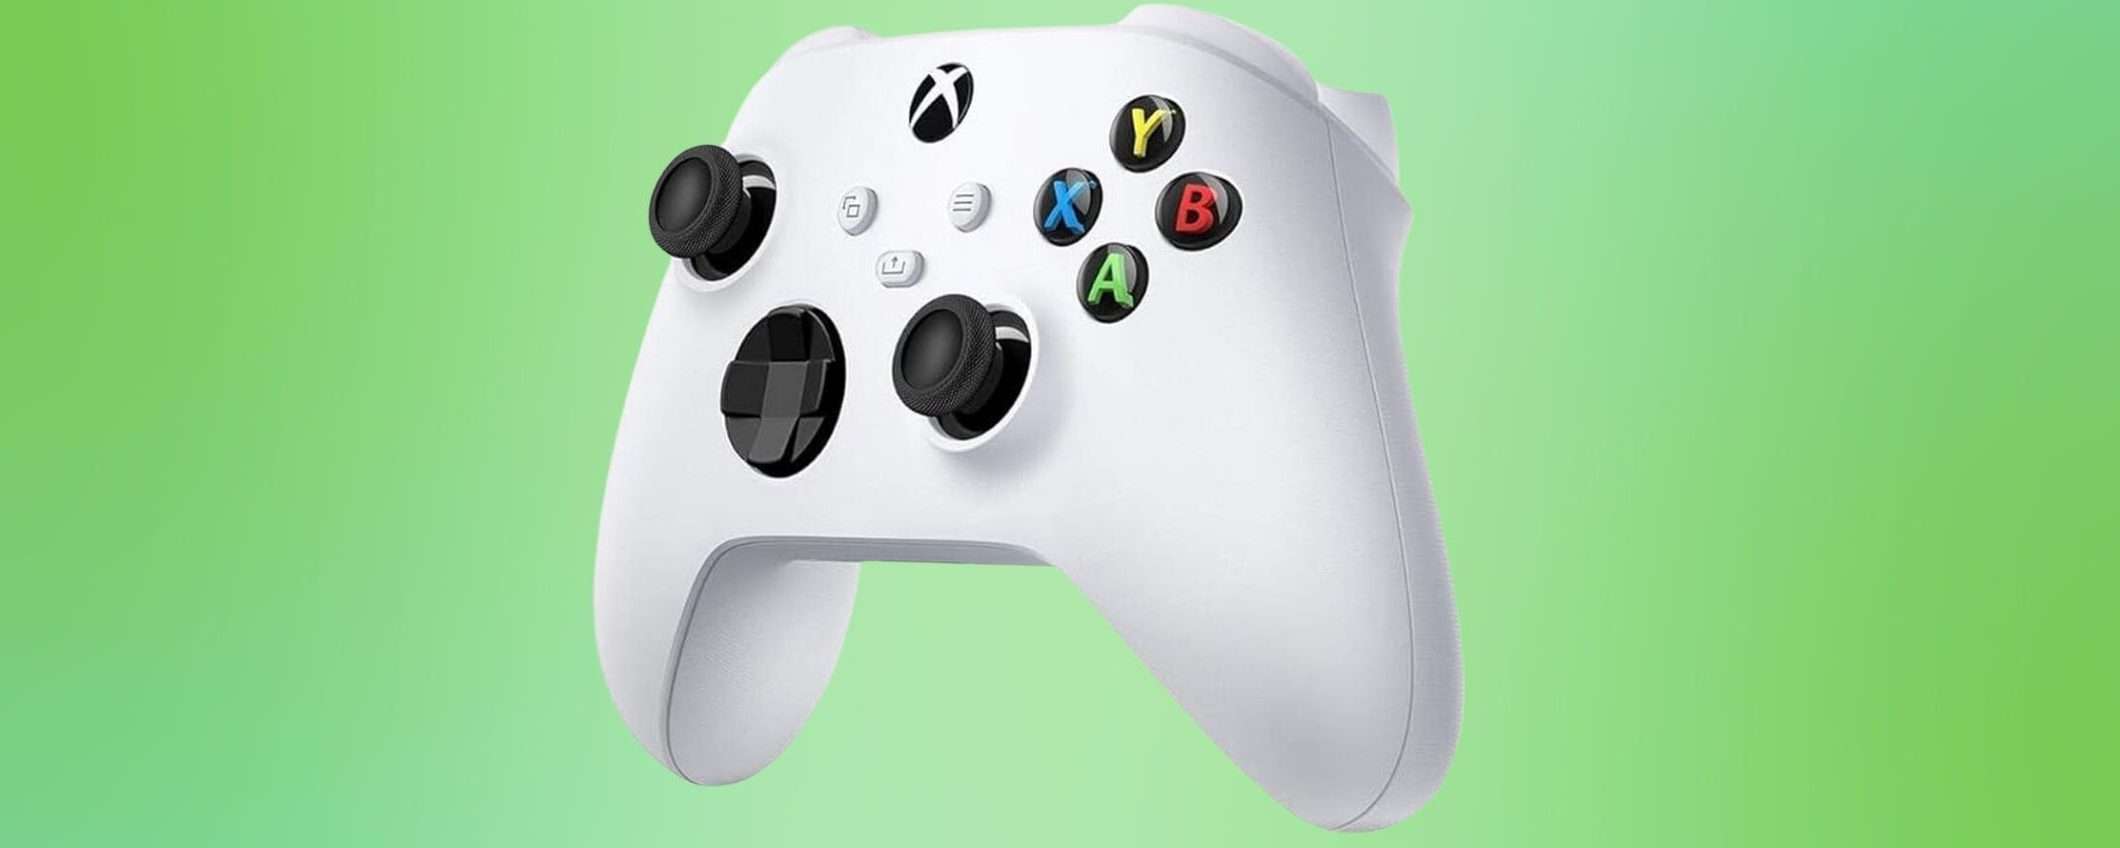 Controller Xbox: la colorazione bianca è in SCONTO su Amazon (-23%)